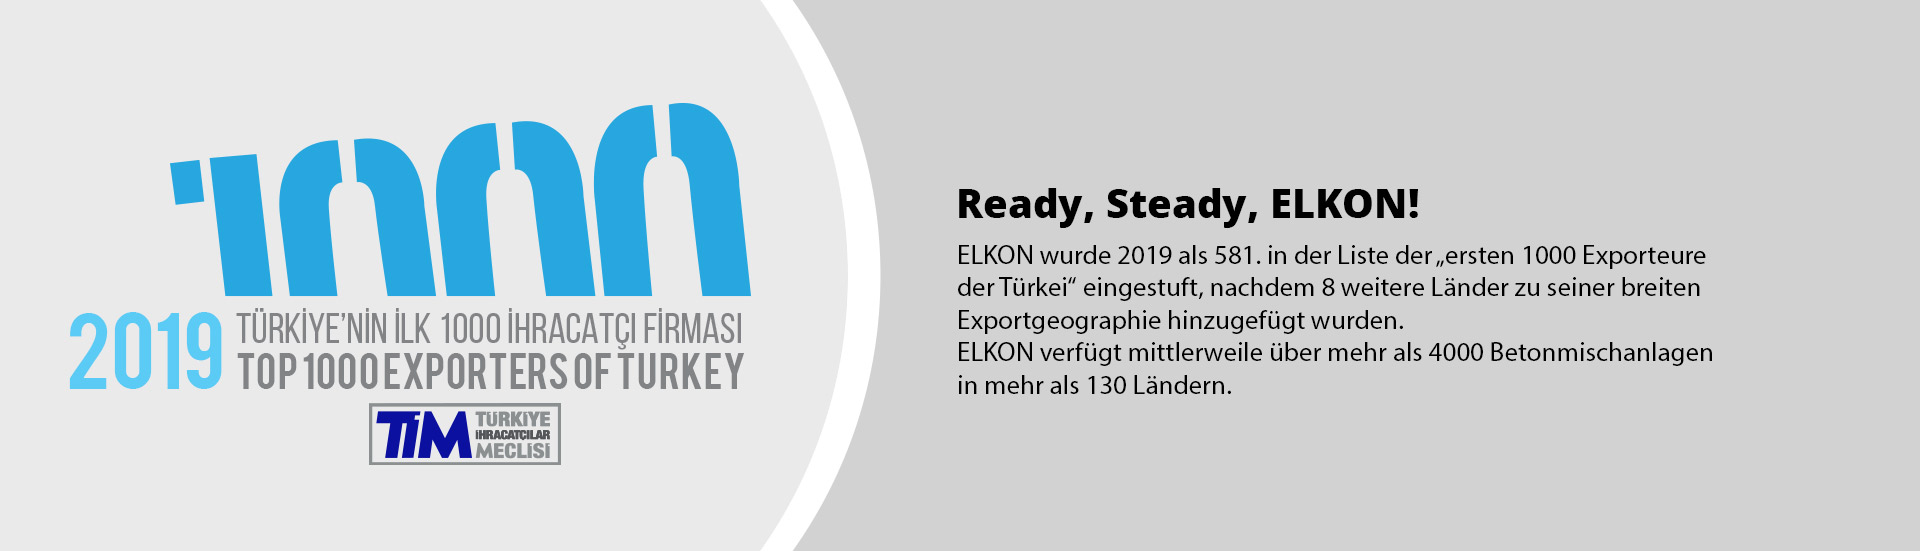 ready steady elkon 581 platz in erste 1000 exporteure der turkei 2019